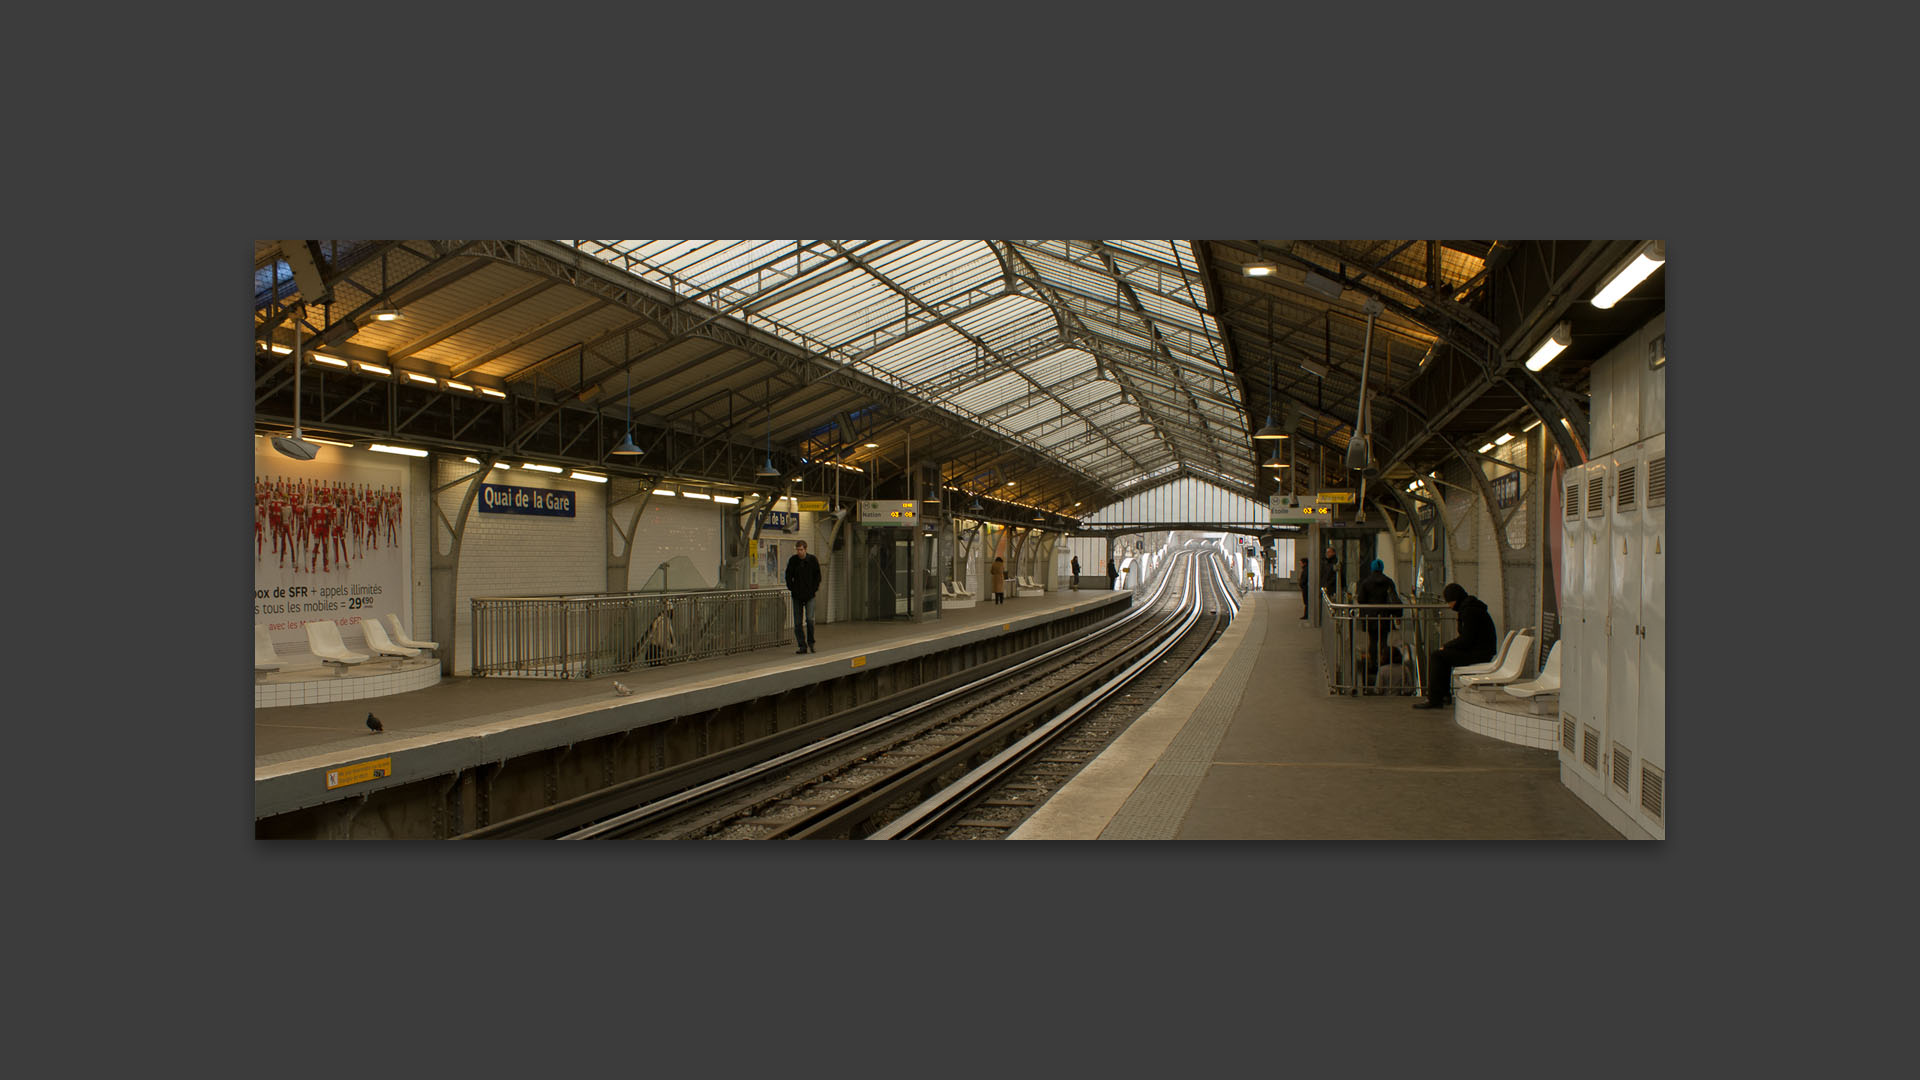 Station de métro Quai de la Gare, à Paris.